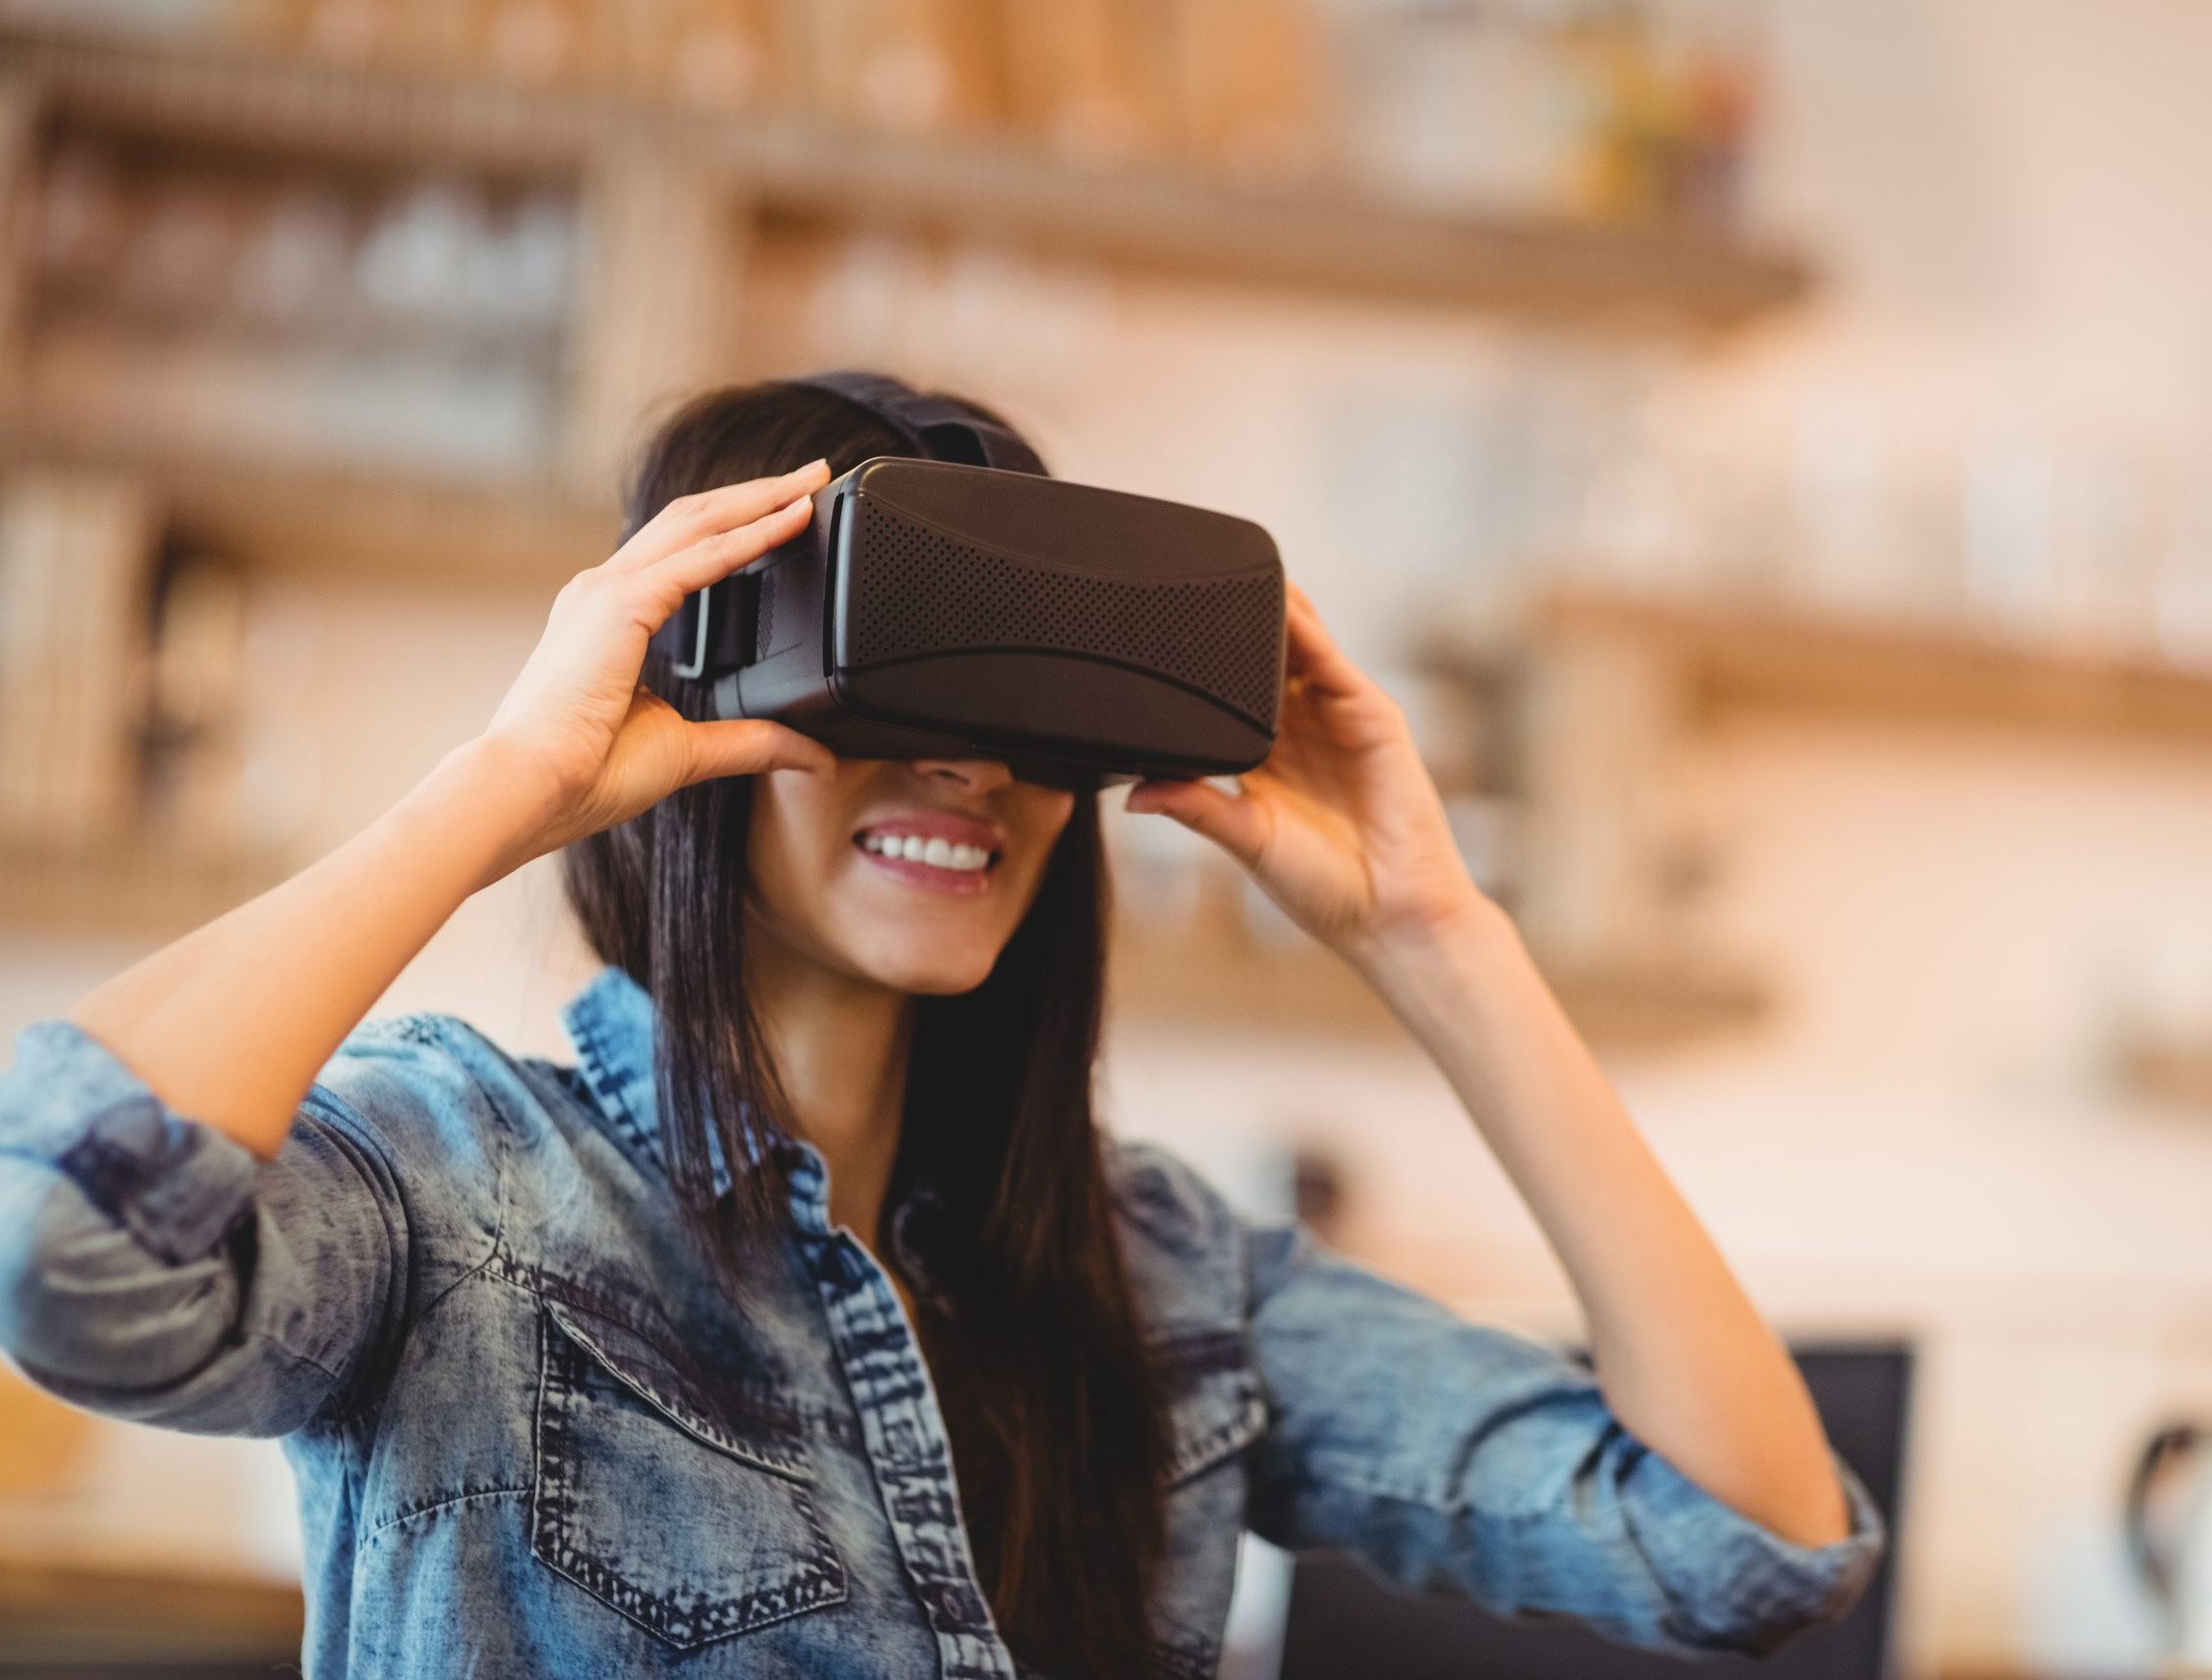 Game e realidade virtual podem ajudar a tratar ansiedade, Ciência e Saúde